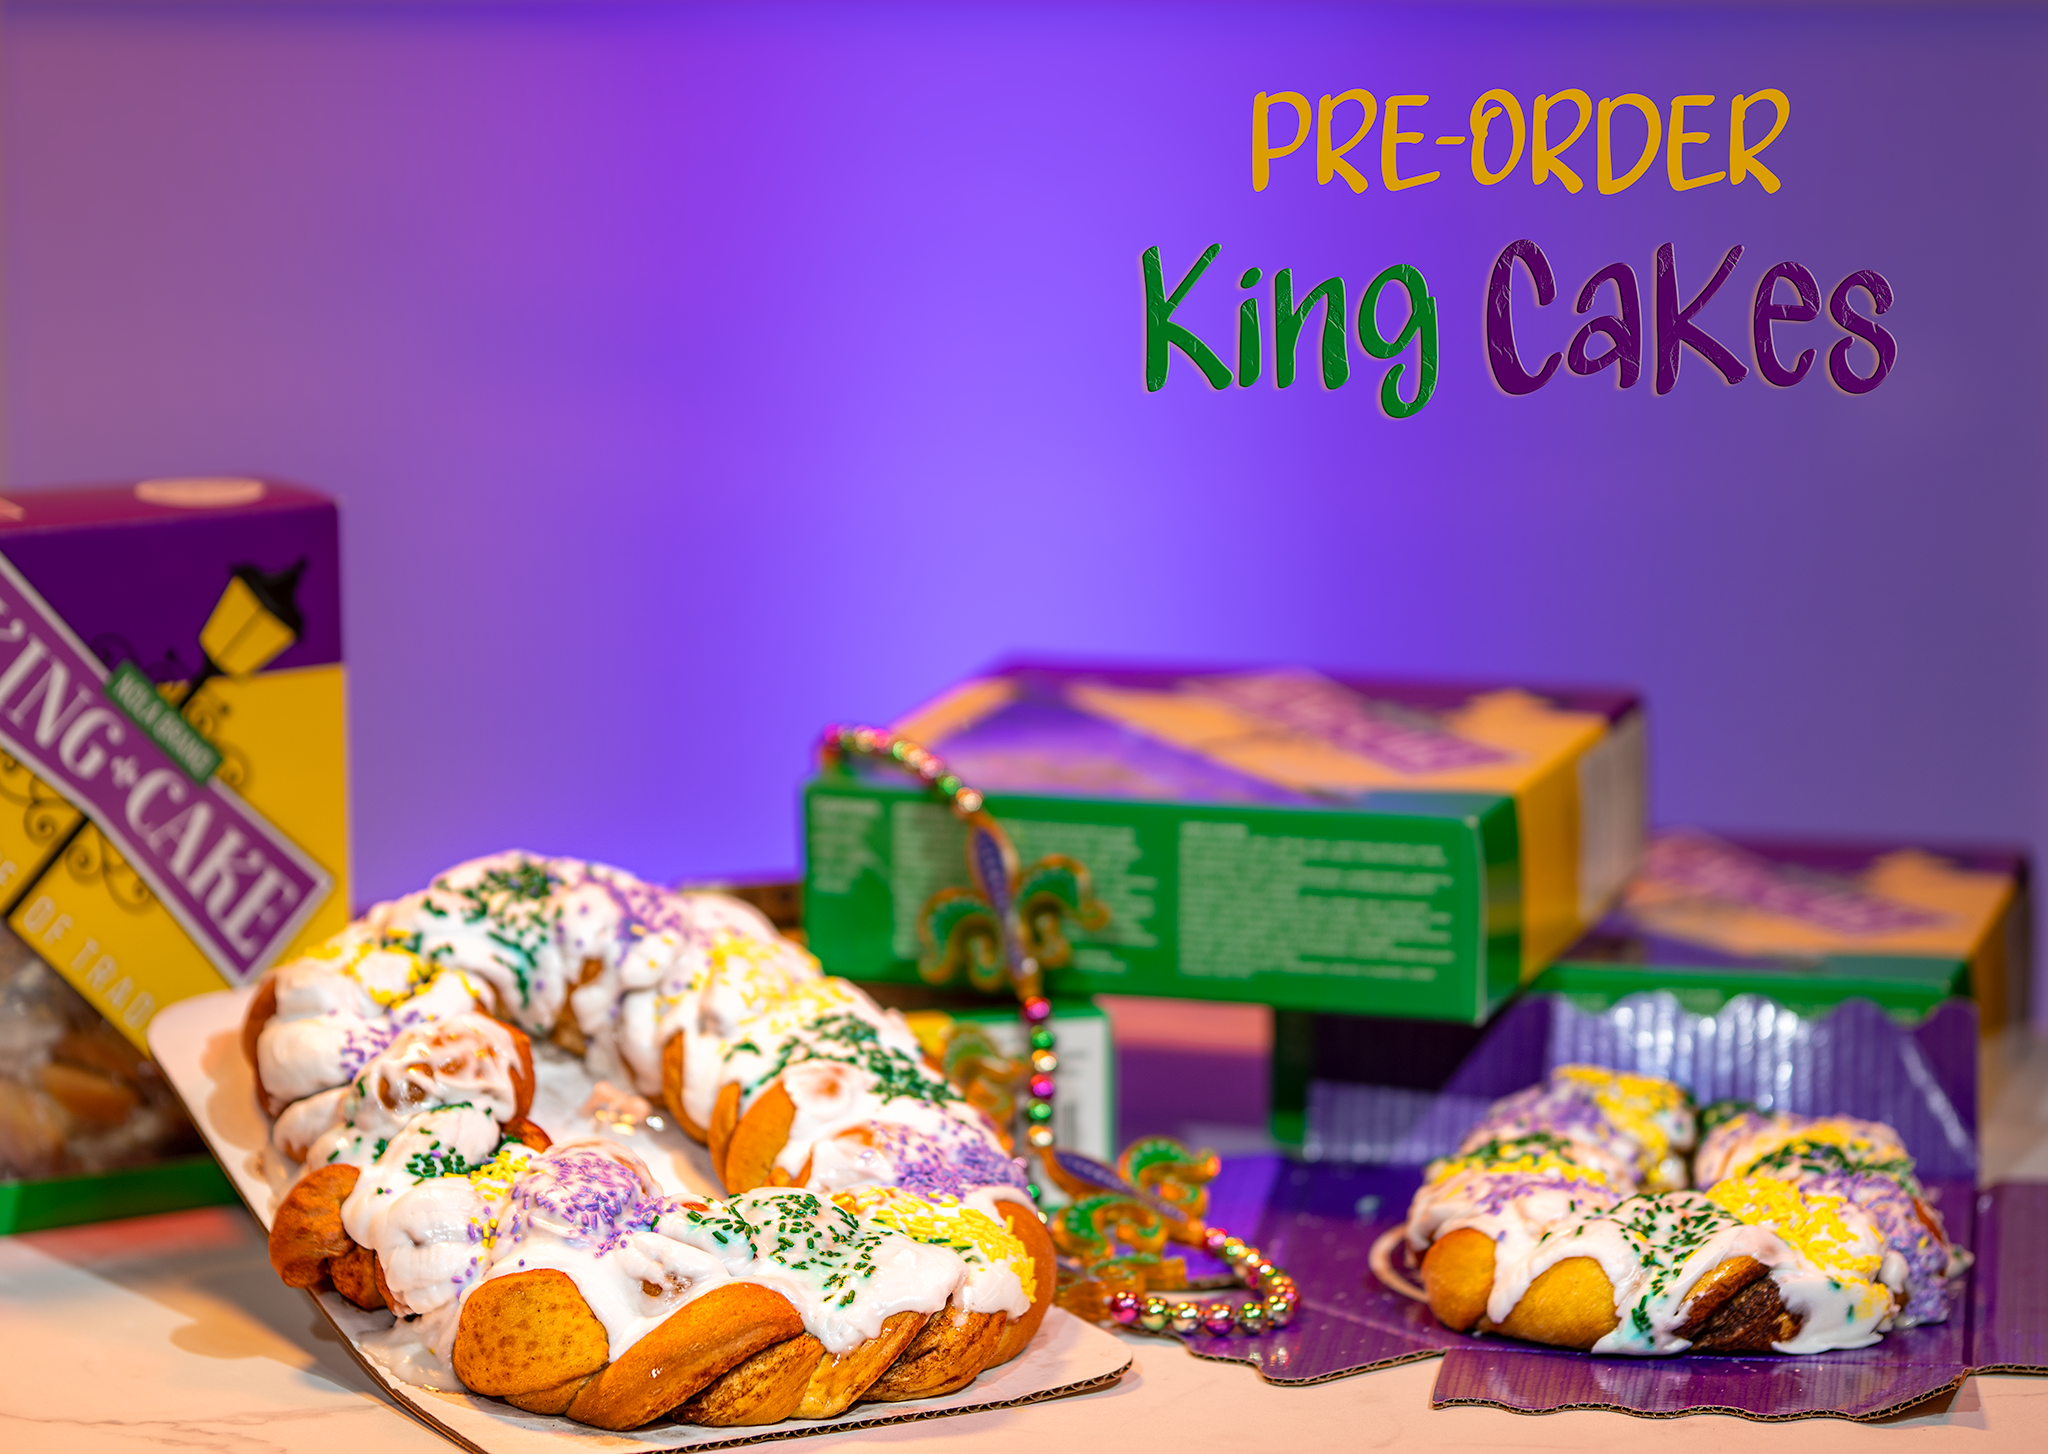 NOLA BRAND King Cake